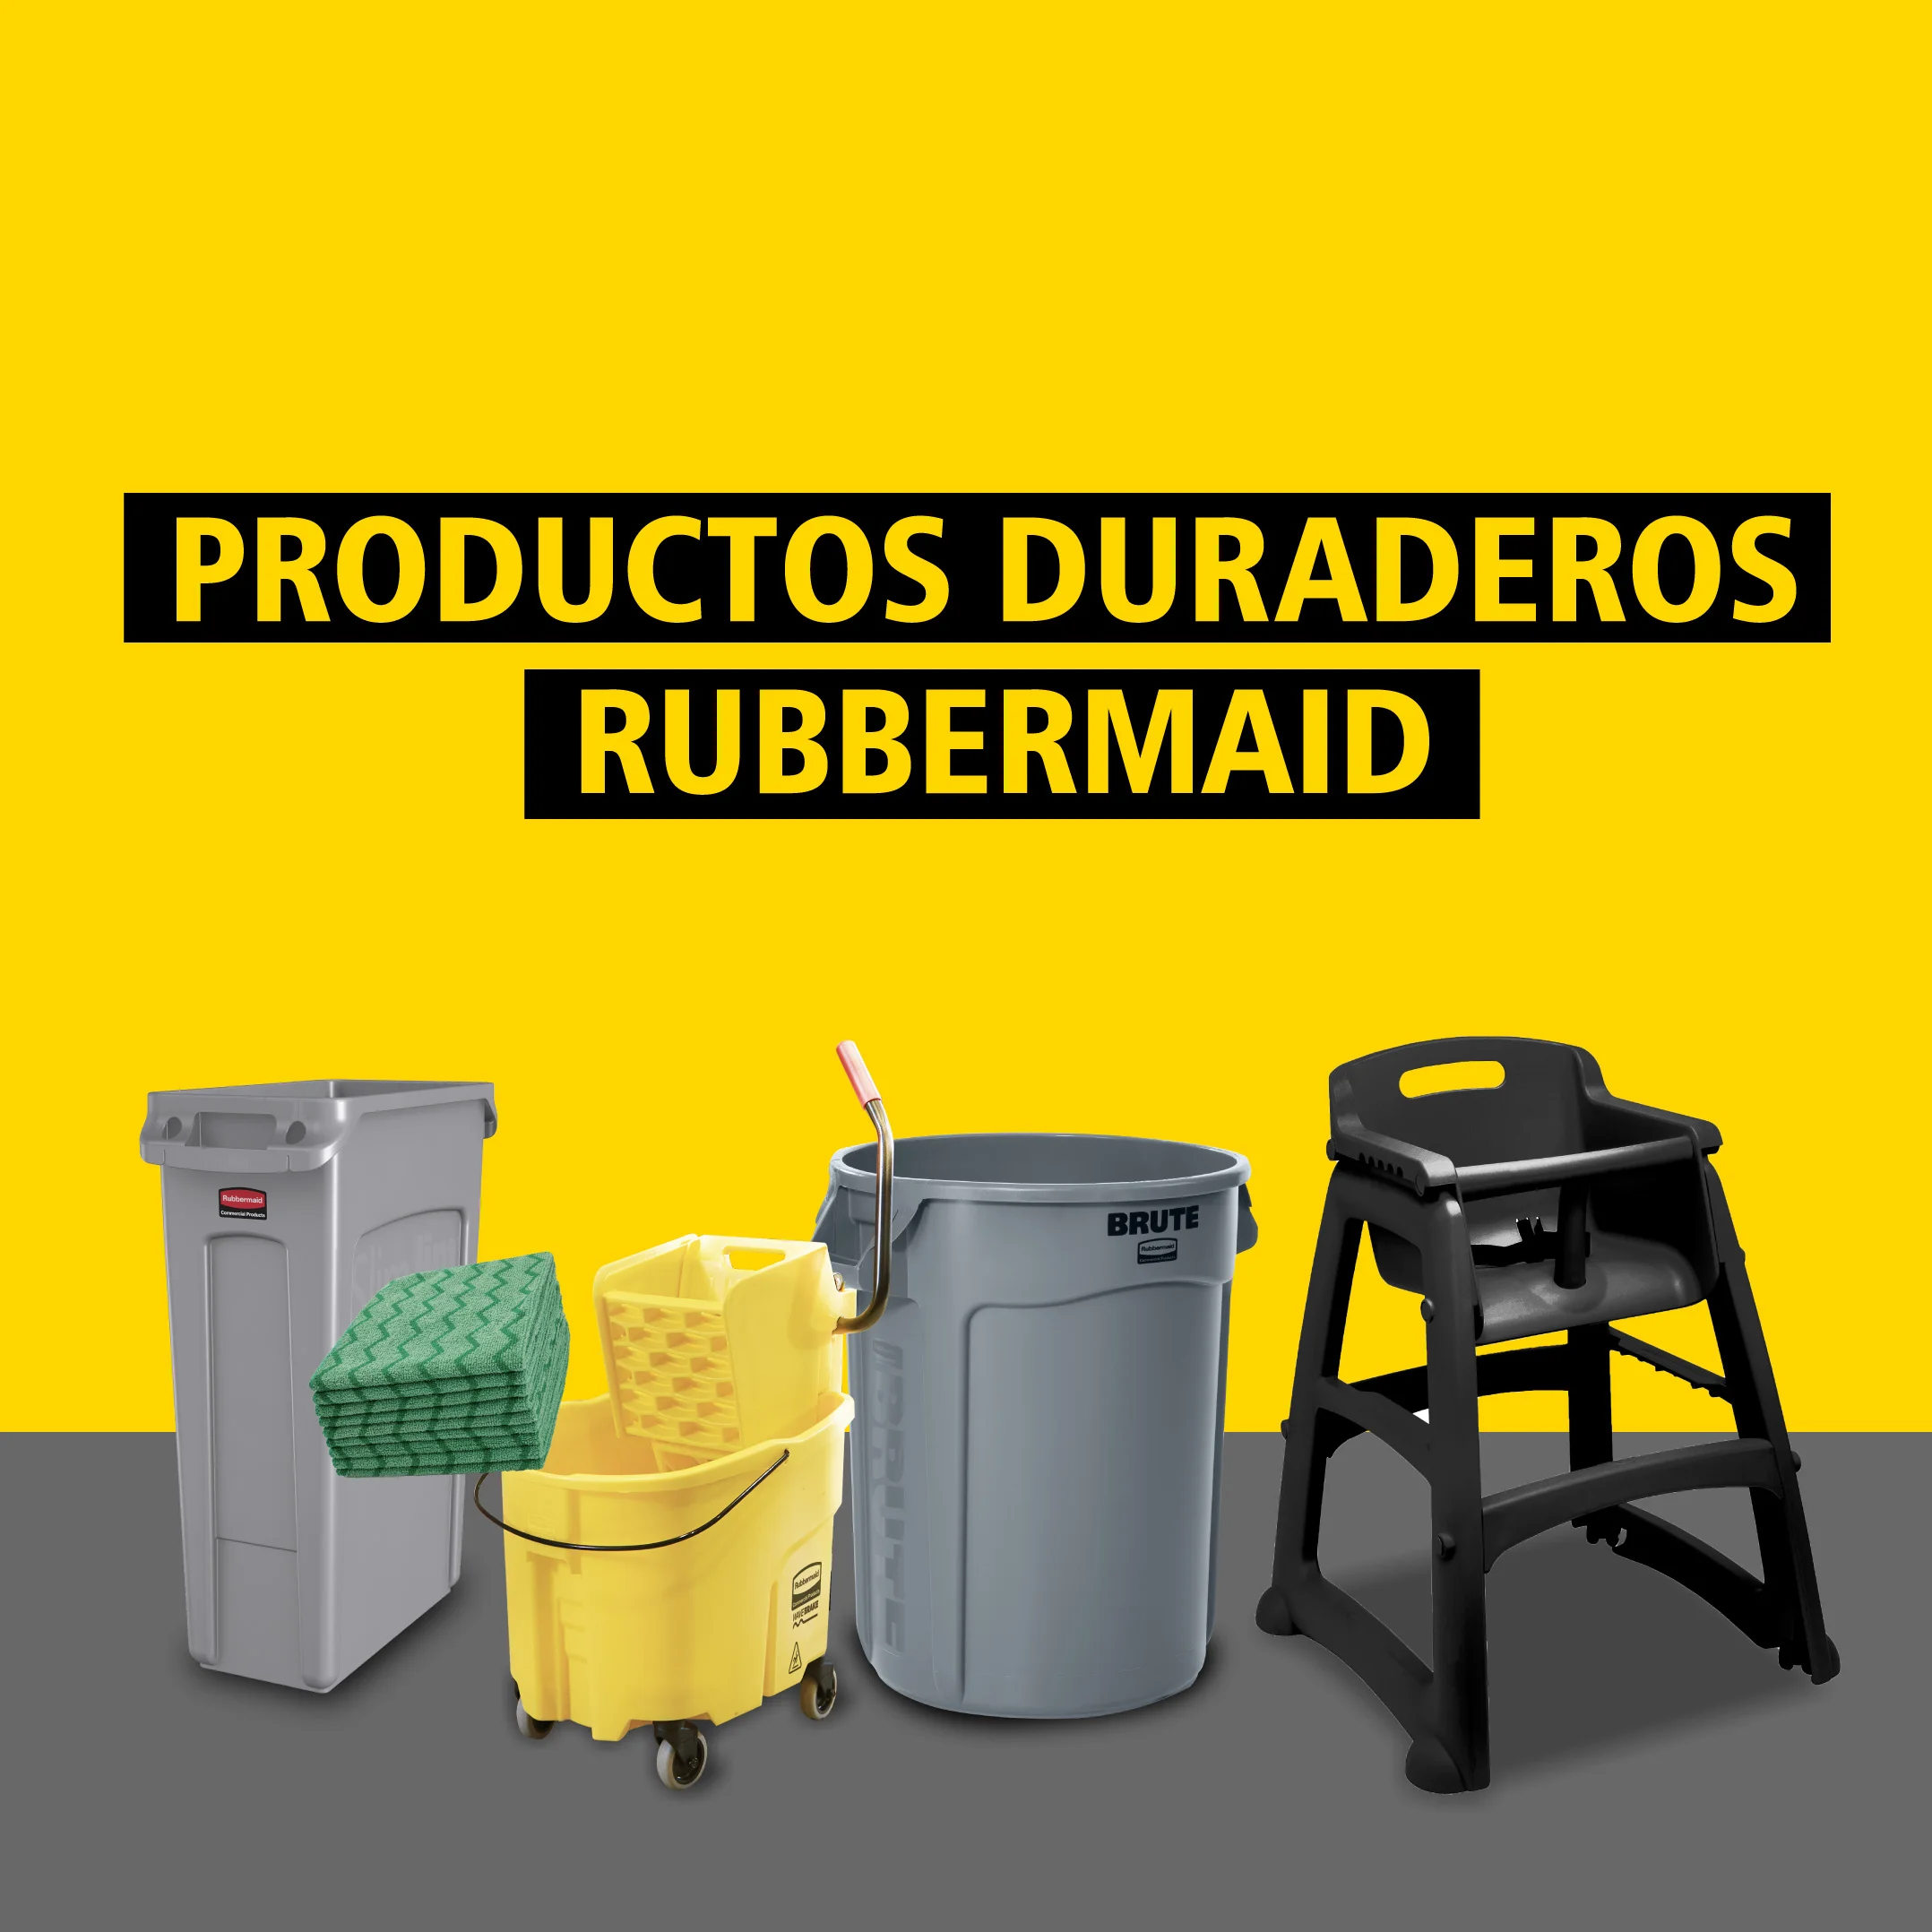 Productos duraderos Rubbermaid: la clave para hacer frente a la contaminación por plásticos